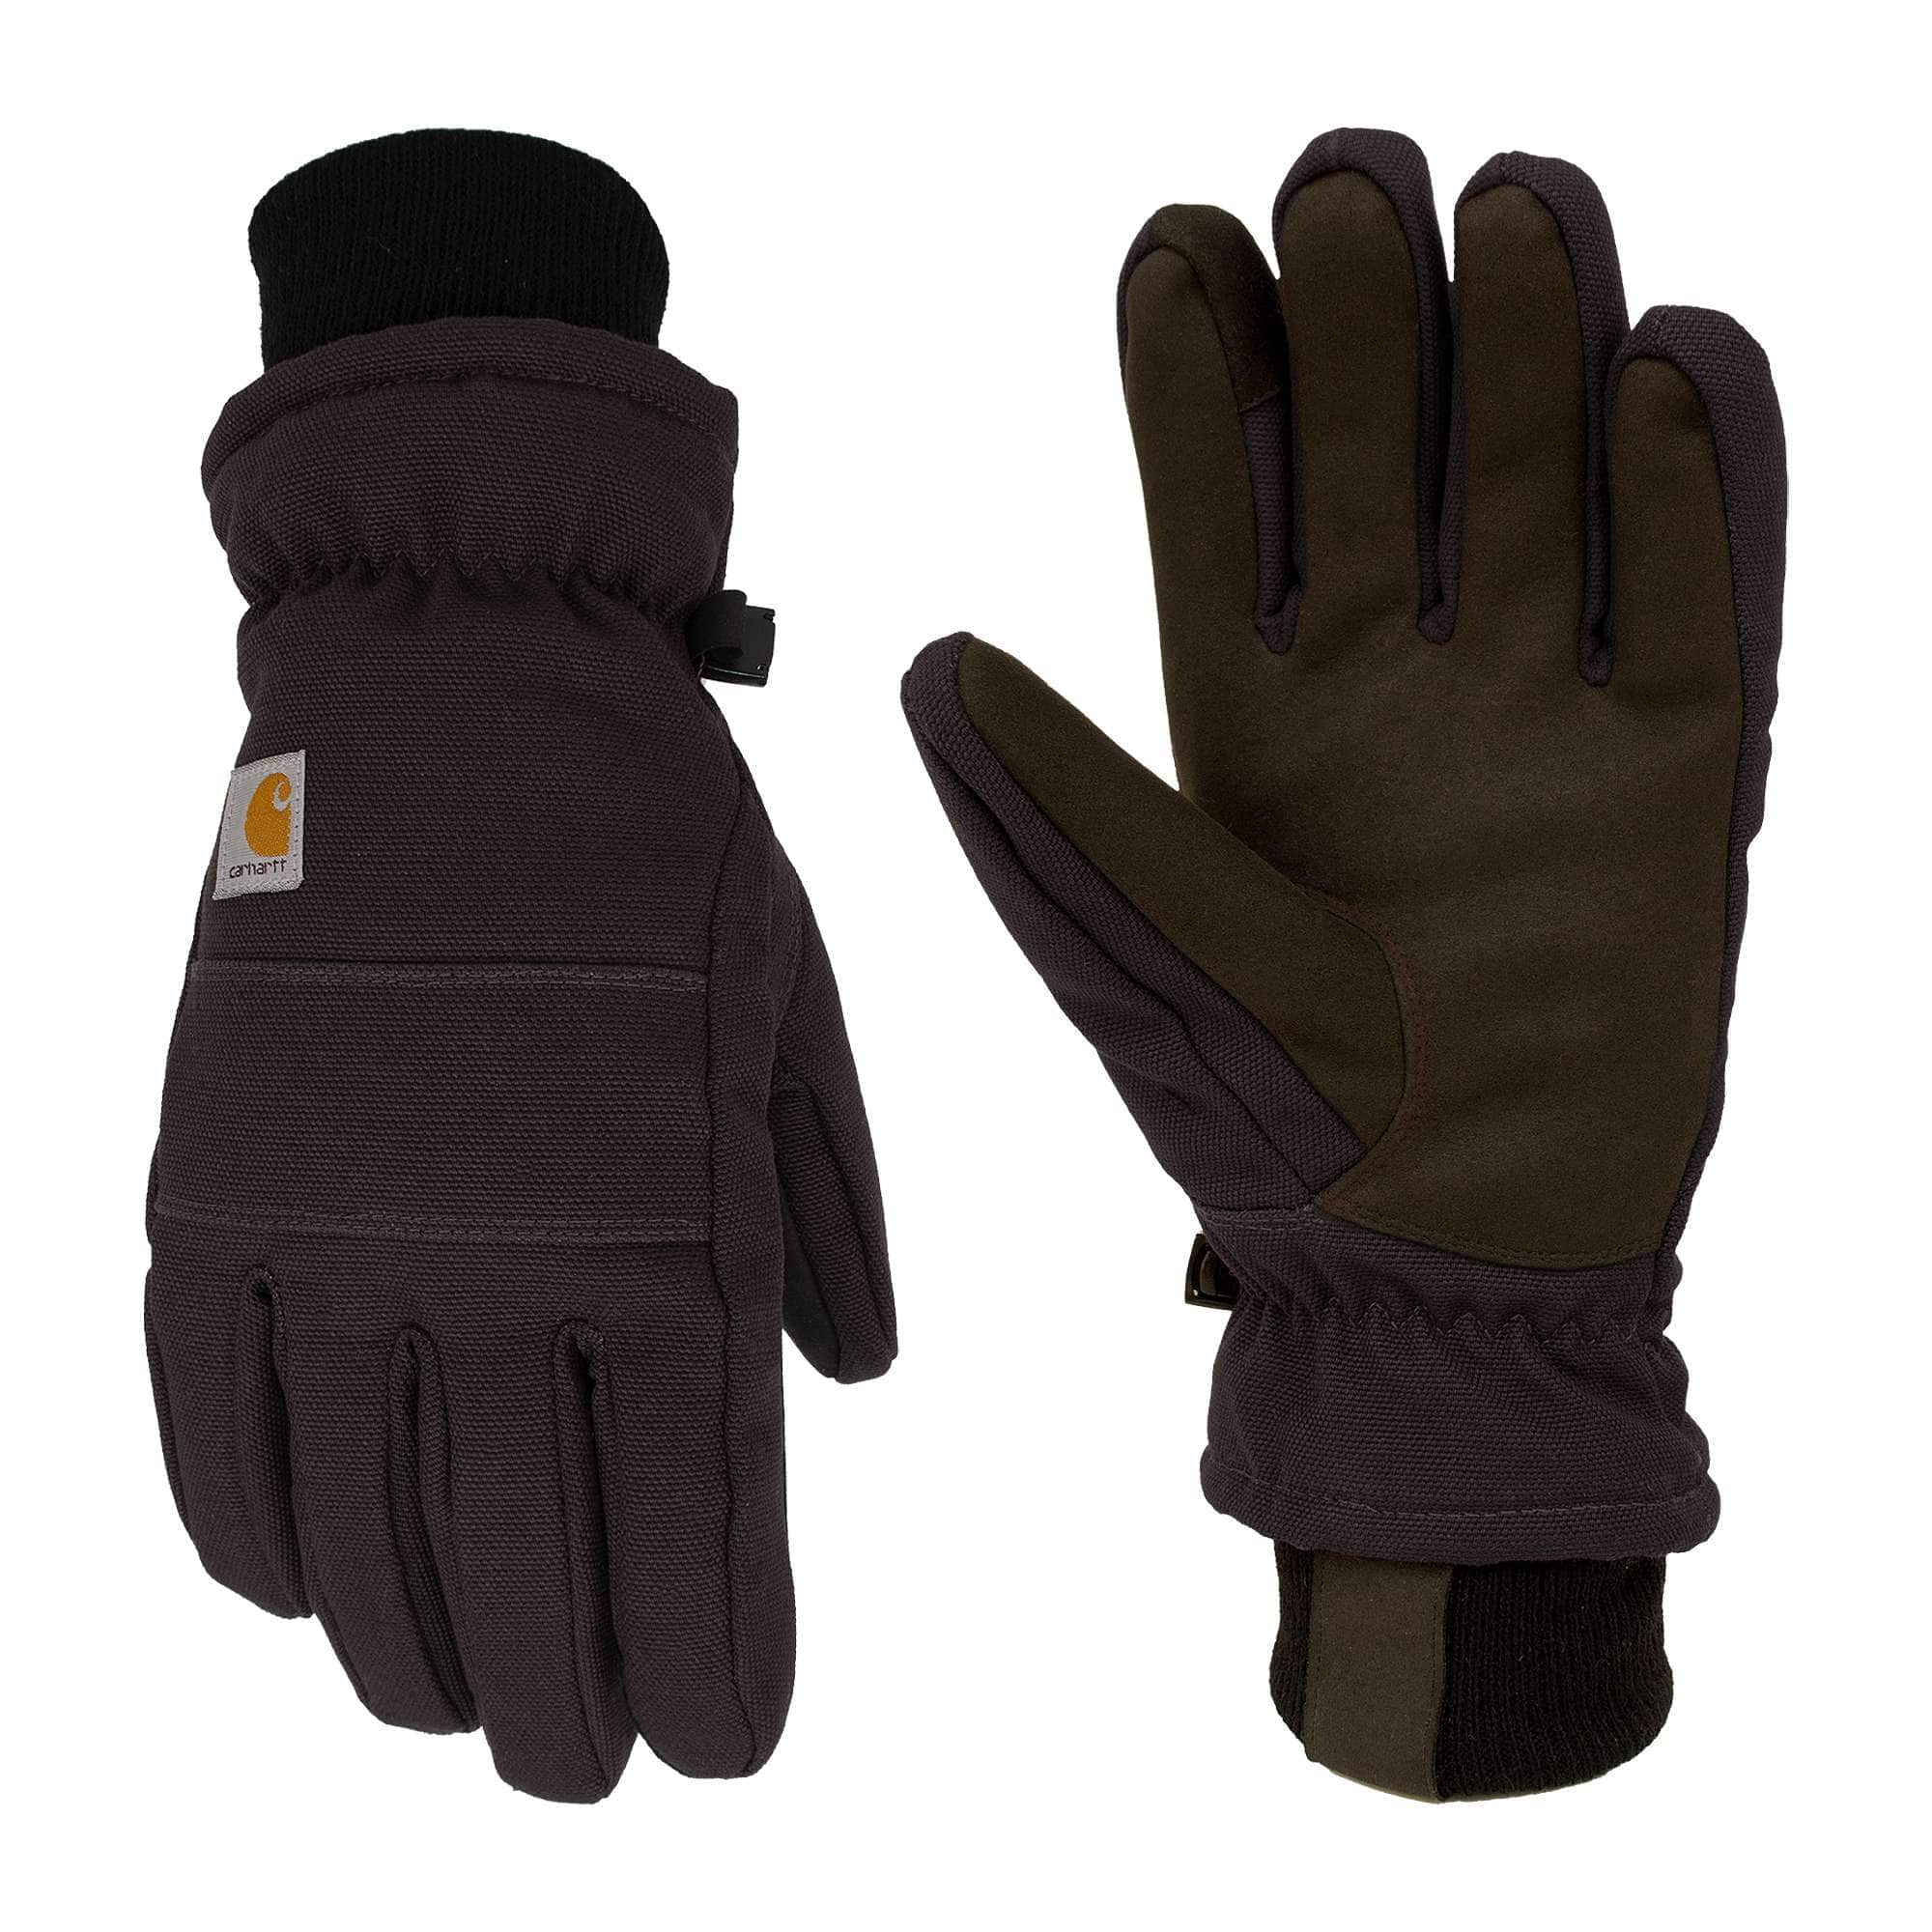 Insulated Winter Work Gloves | Carhartt | Carhartt